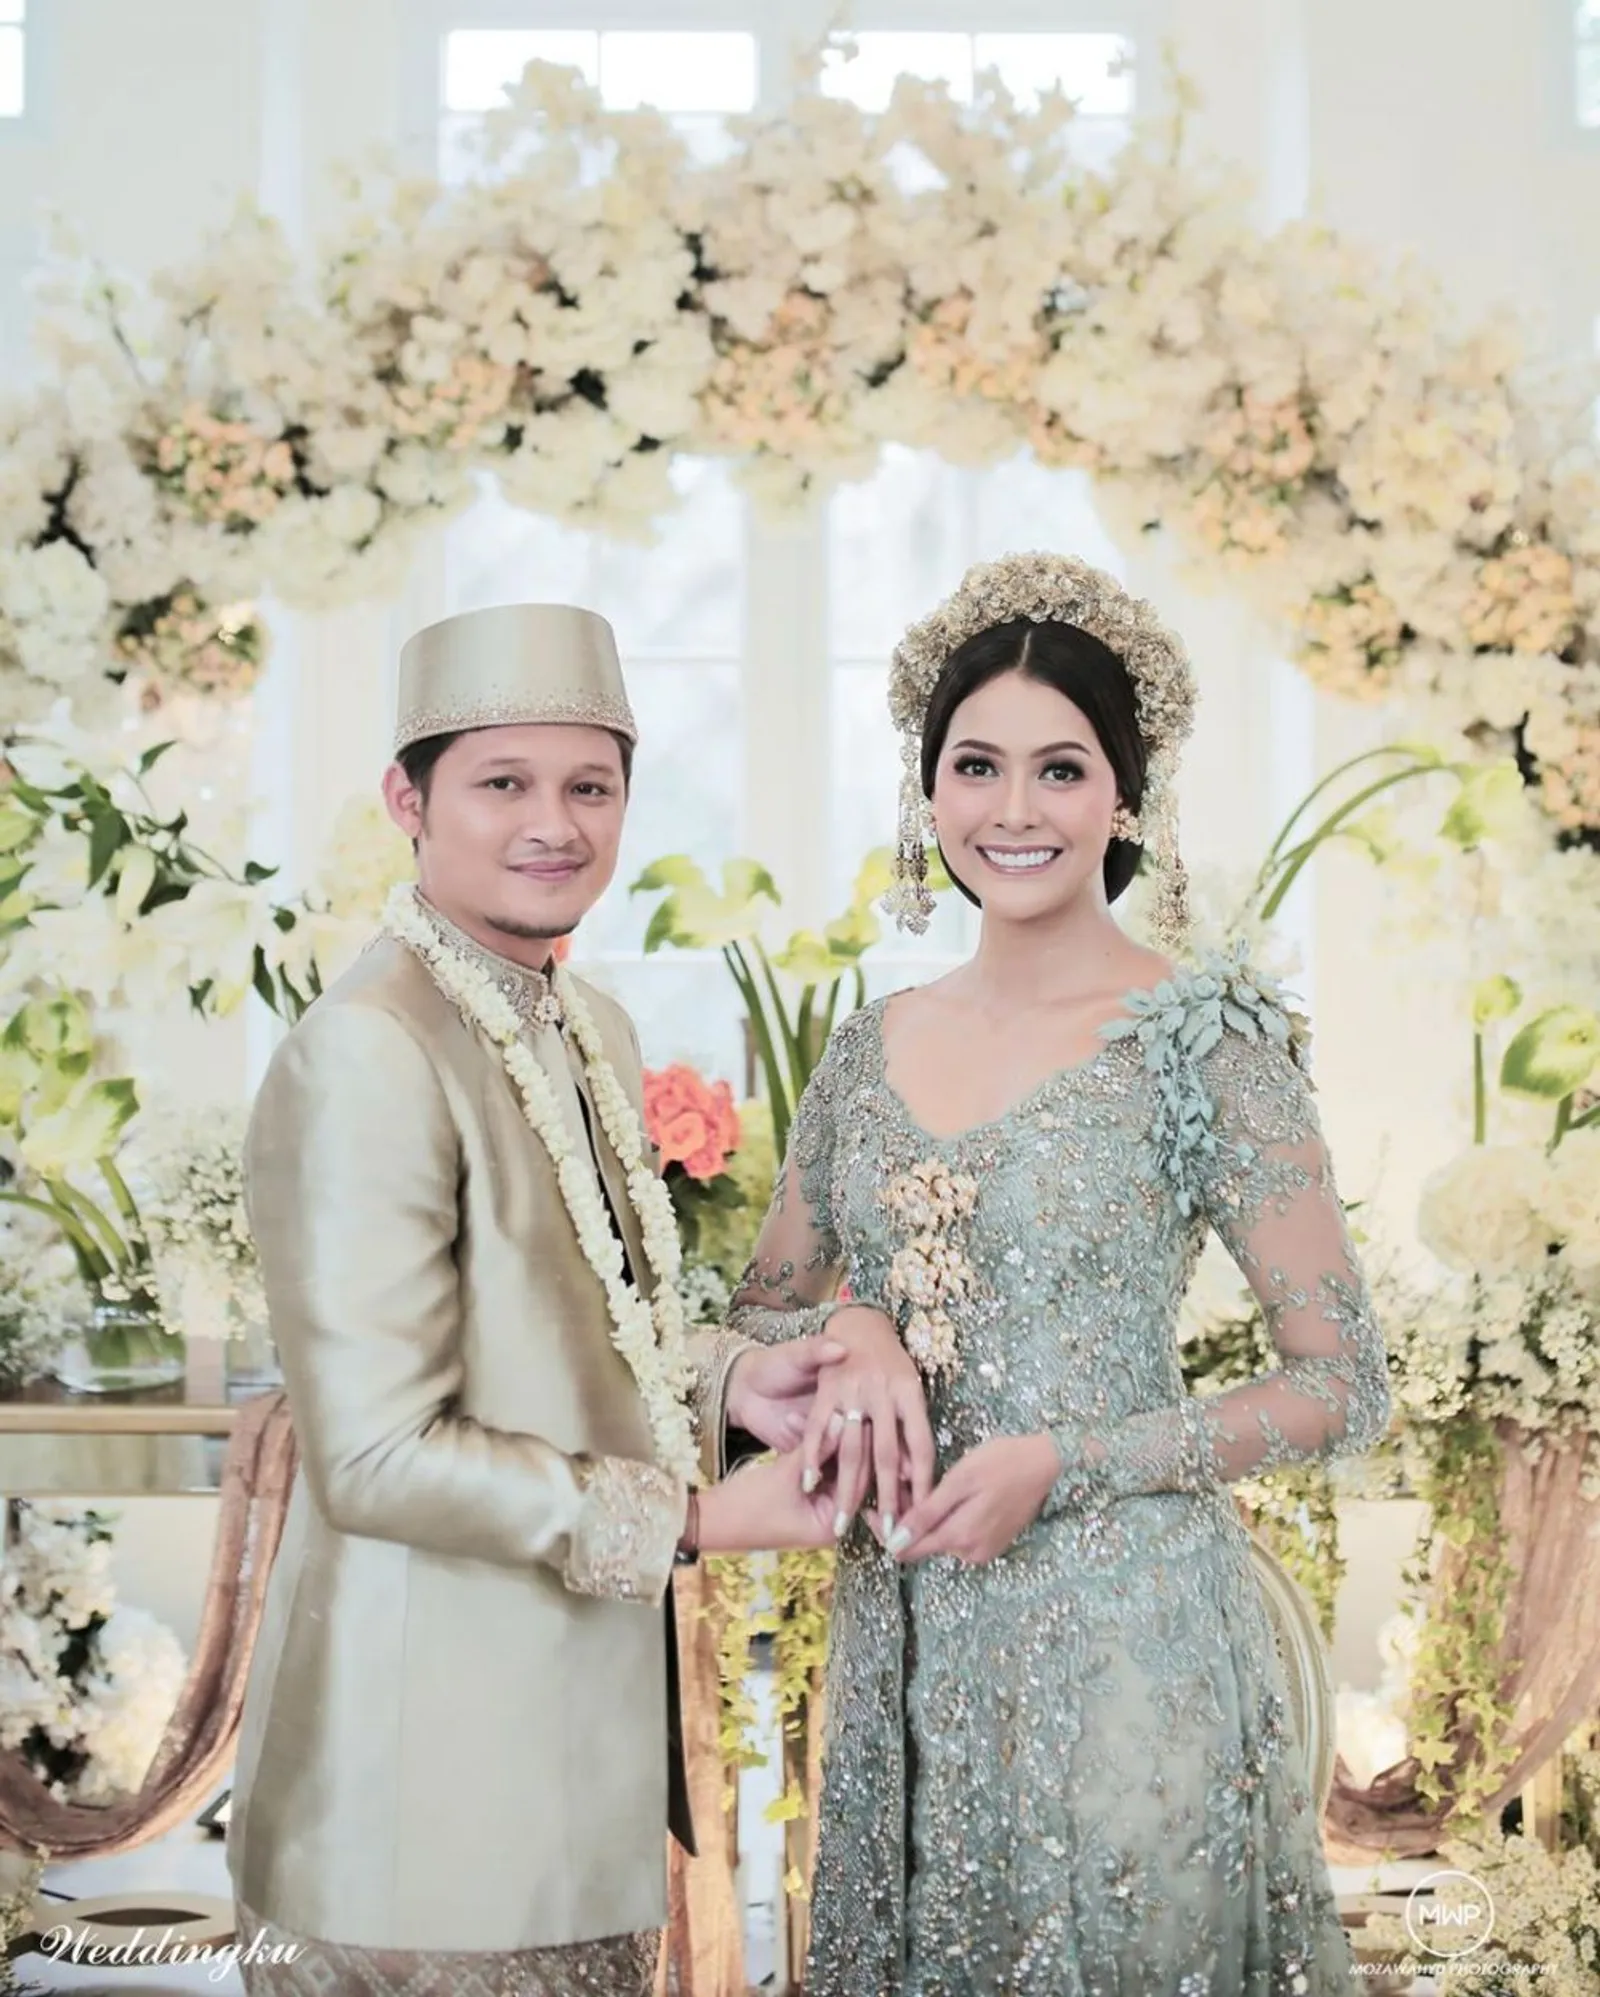 Romantis! 9 Laki-Laki Ini Beruntung Menikah dengan Top Model Indonesia